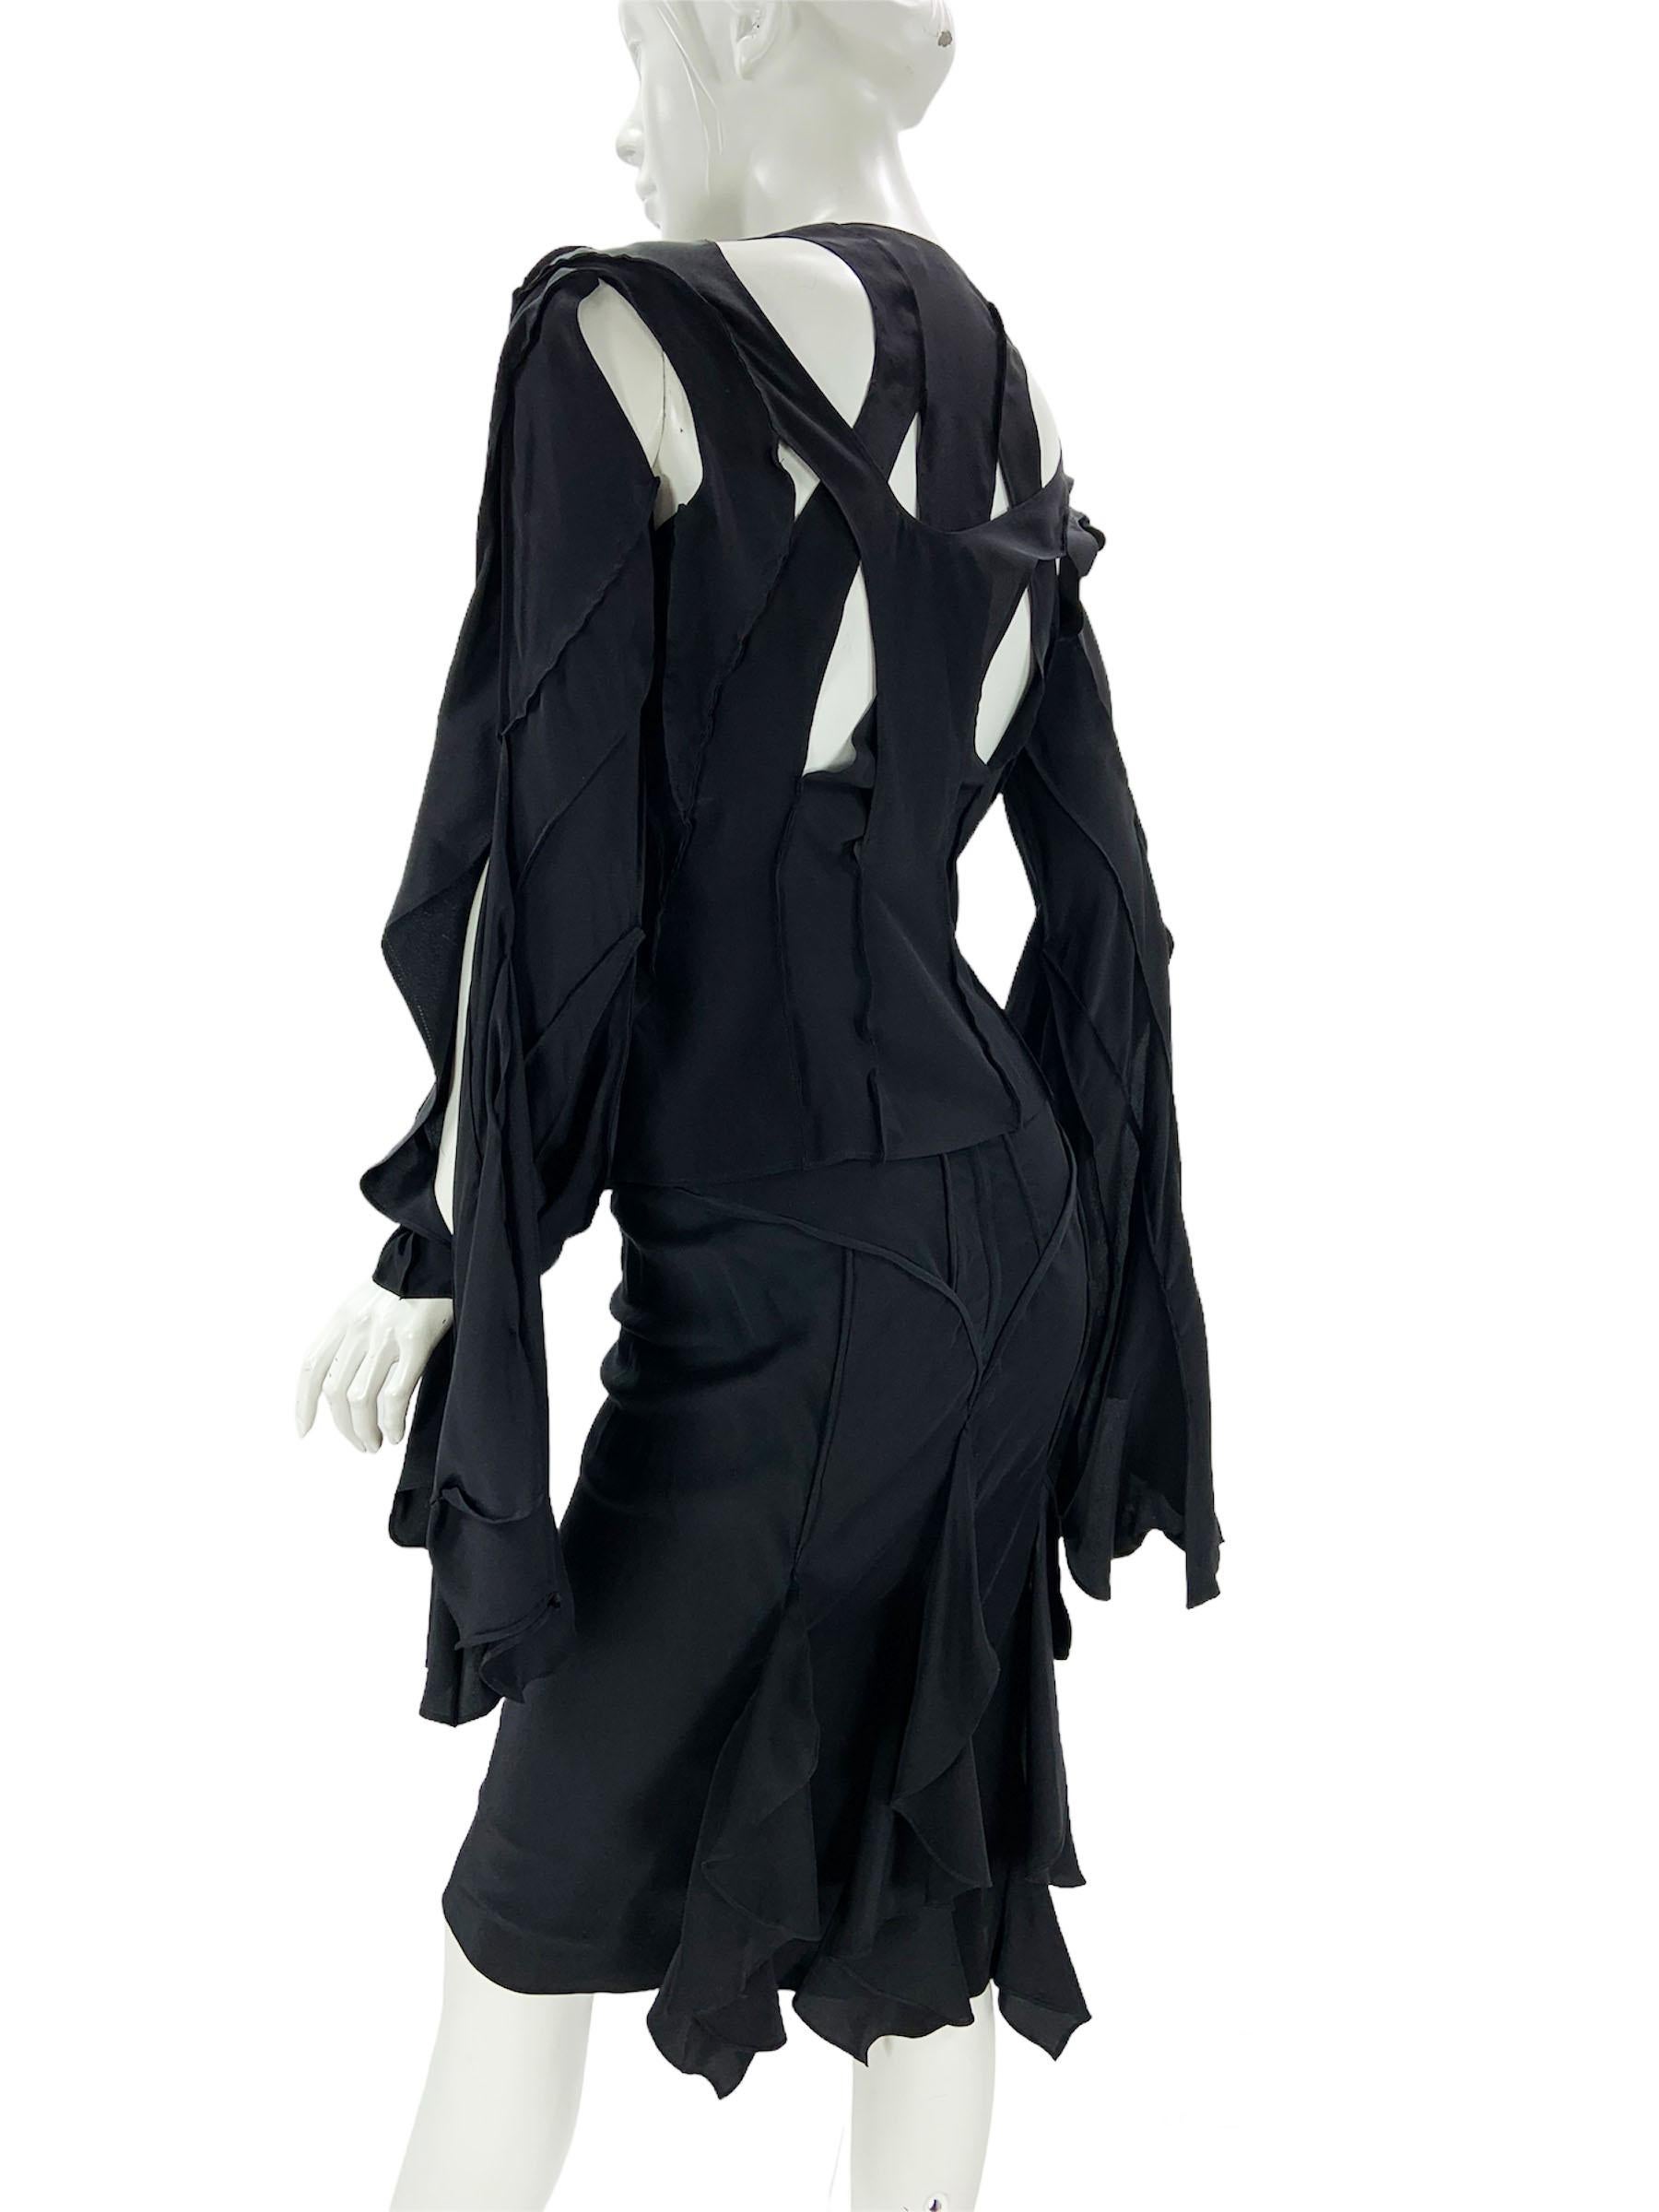 Tom Ford pour Yves Saint Laurent - Tailleur jupe en soie noire, taille 38 - US 6, printemps-été 2003 Pour femmes en vente